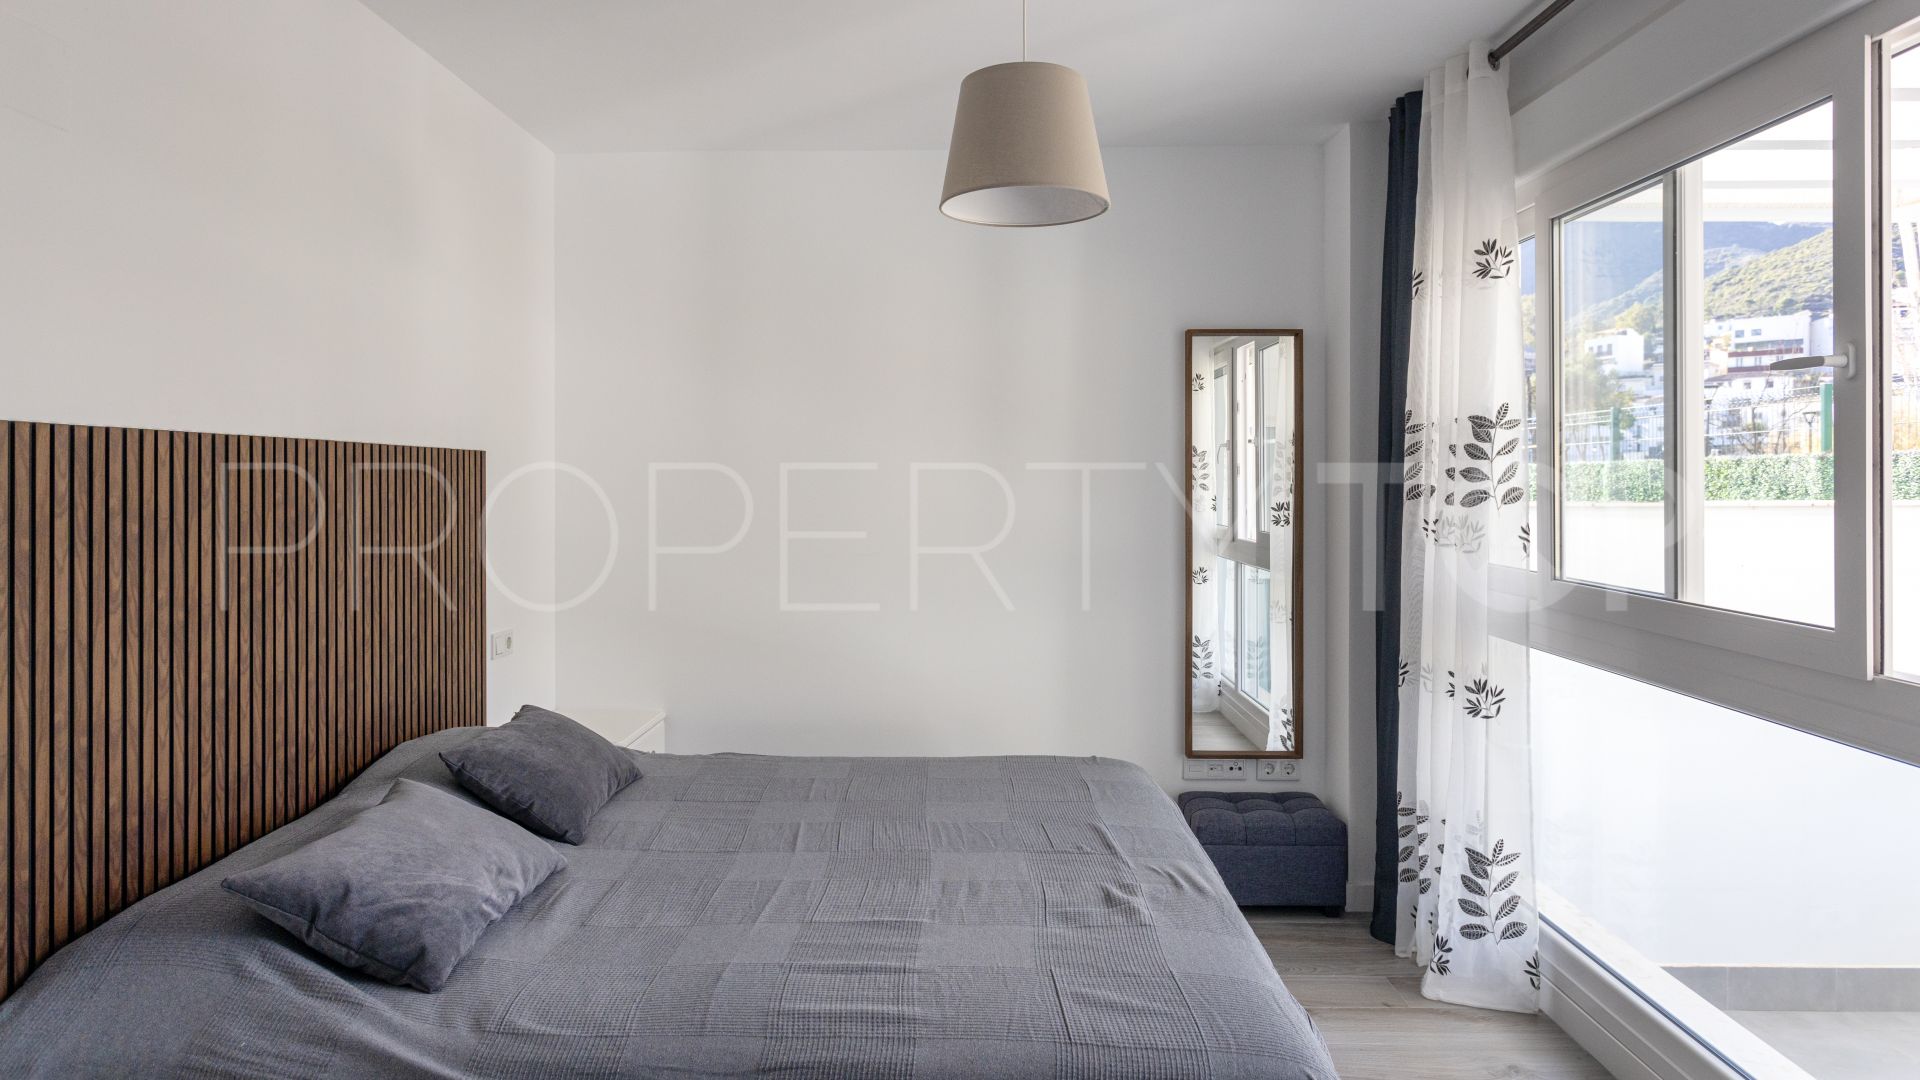 For sale duplex in Mirador en Moraleda with 3 bedrooms